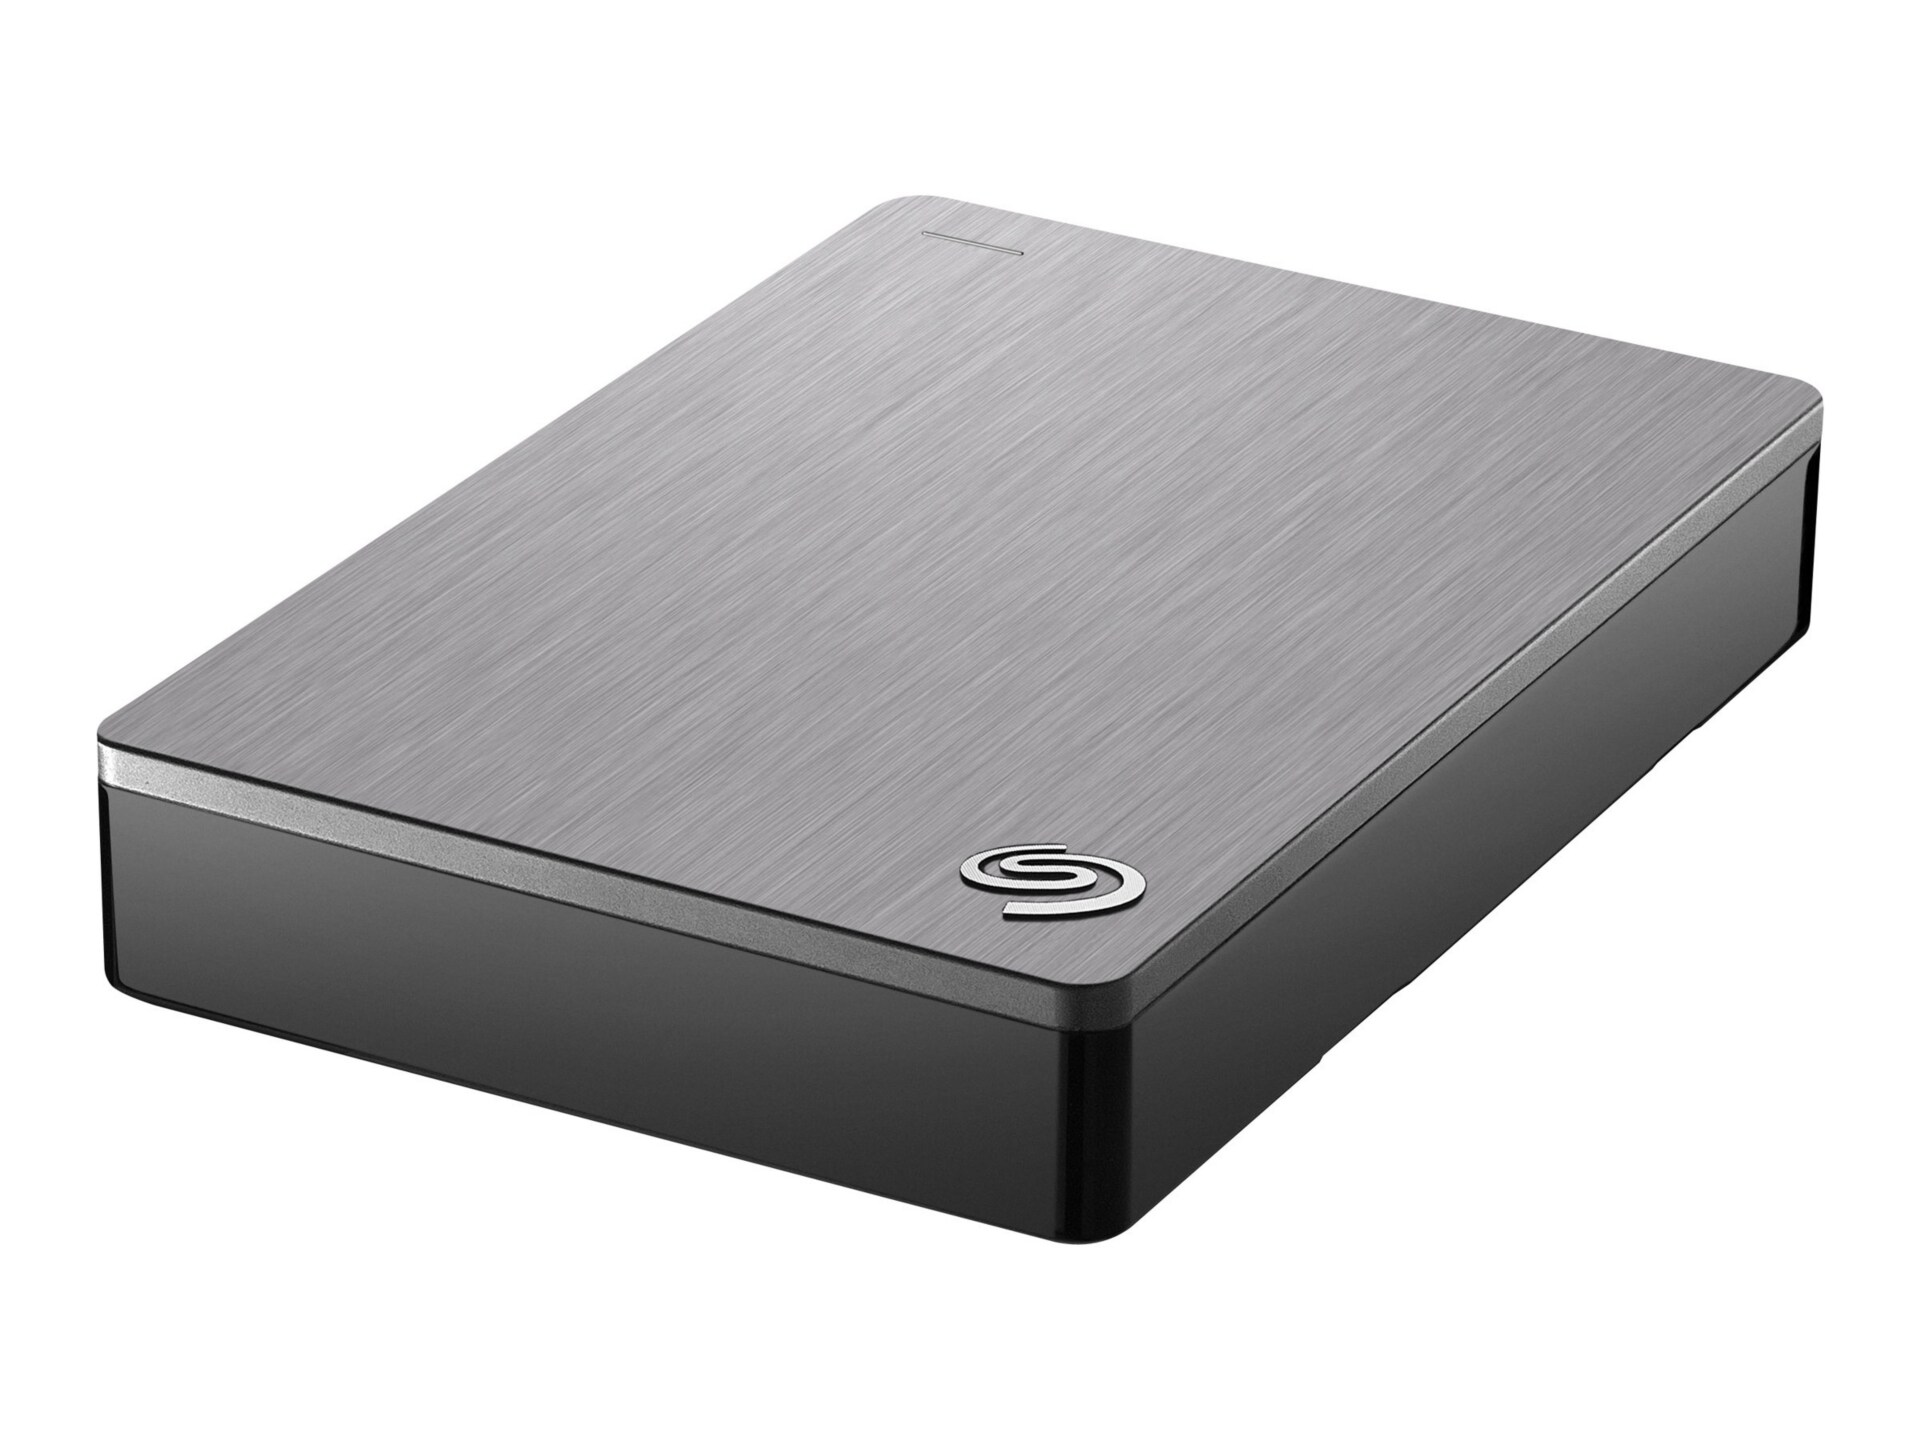 Seagate Backup Plus STDR4000900 - hard drive - 4 TB - USB 3.0